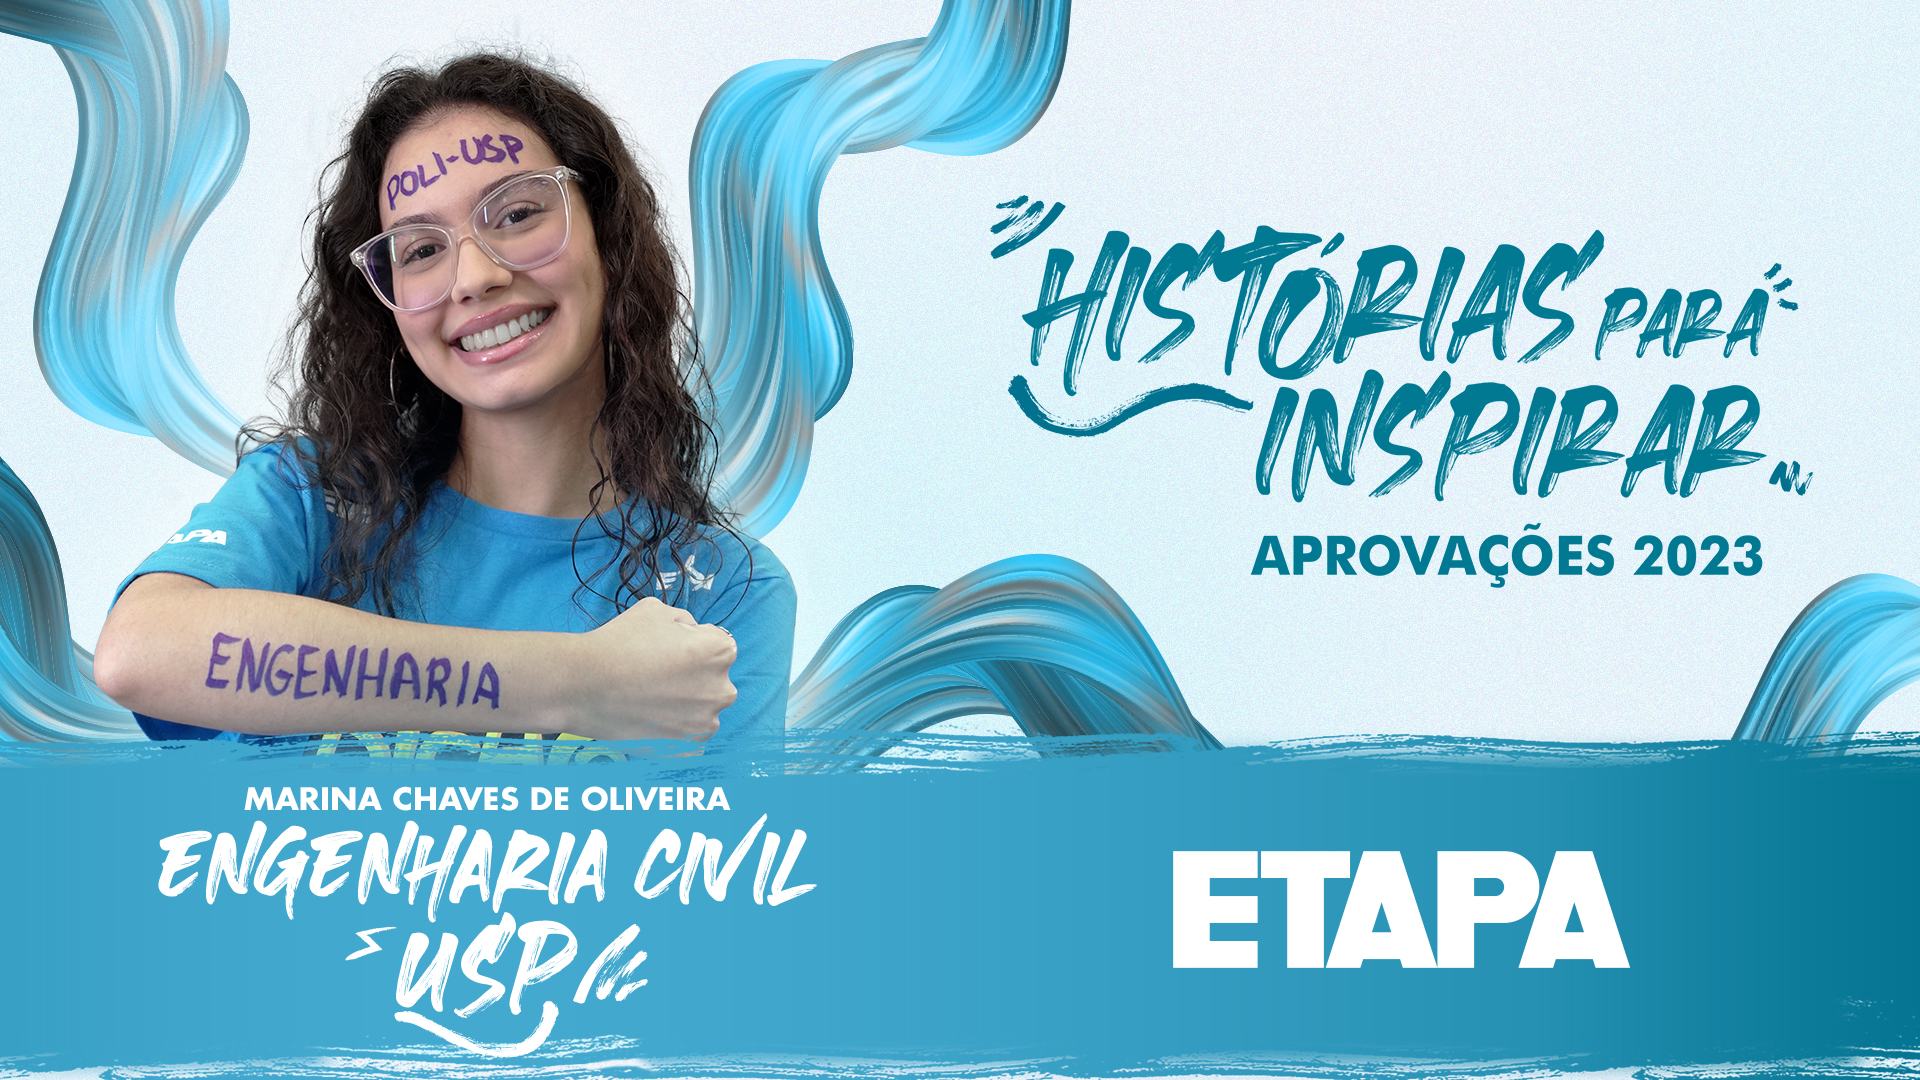 Marina Chaves de Oliveira foi aprovada em Engenharia Civil na USP, Unicamp e Unesp após um ano de preparação no Curso Etapa.